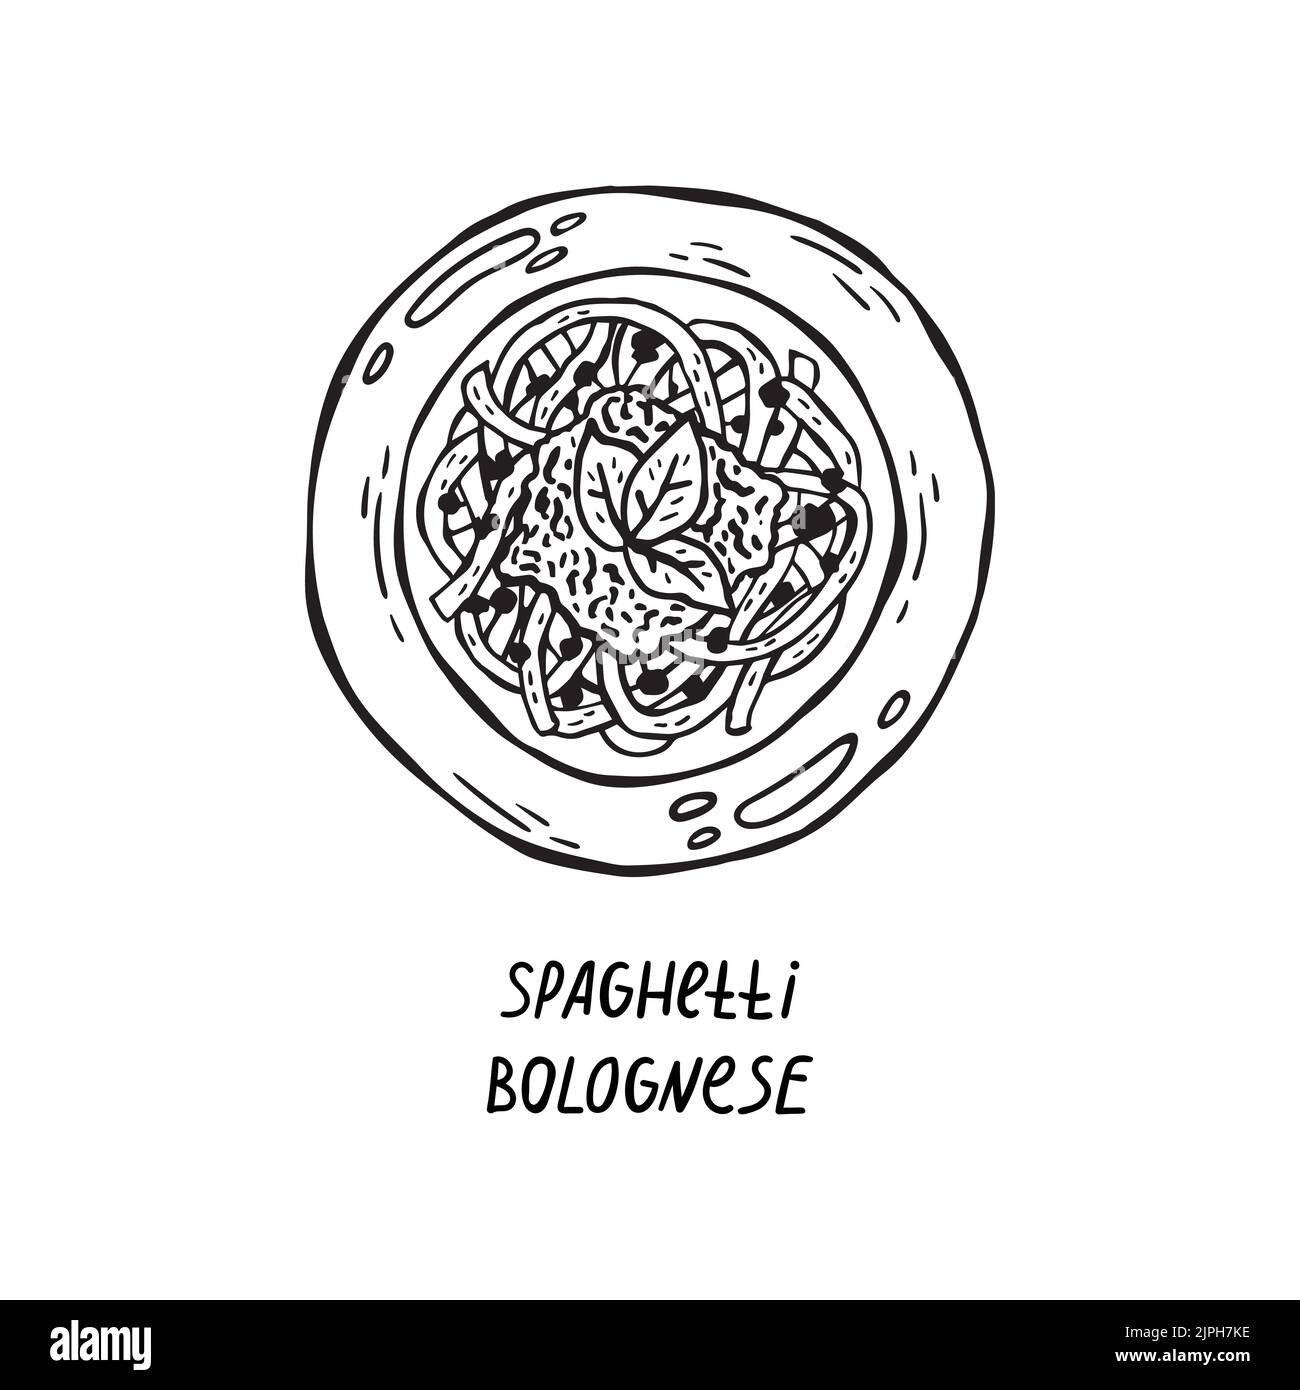 Illustrazione vettoriale della cucina italiana disegnata a mano. Spaghetti bolognese Illustrazione Vettoriale